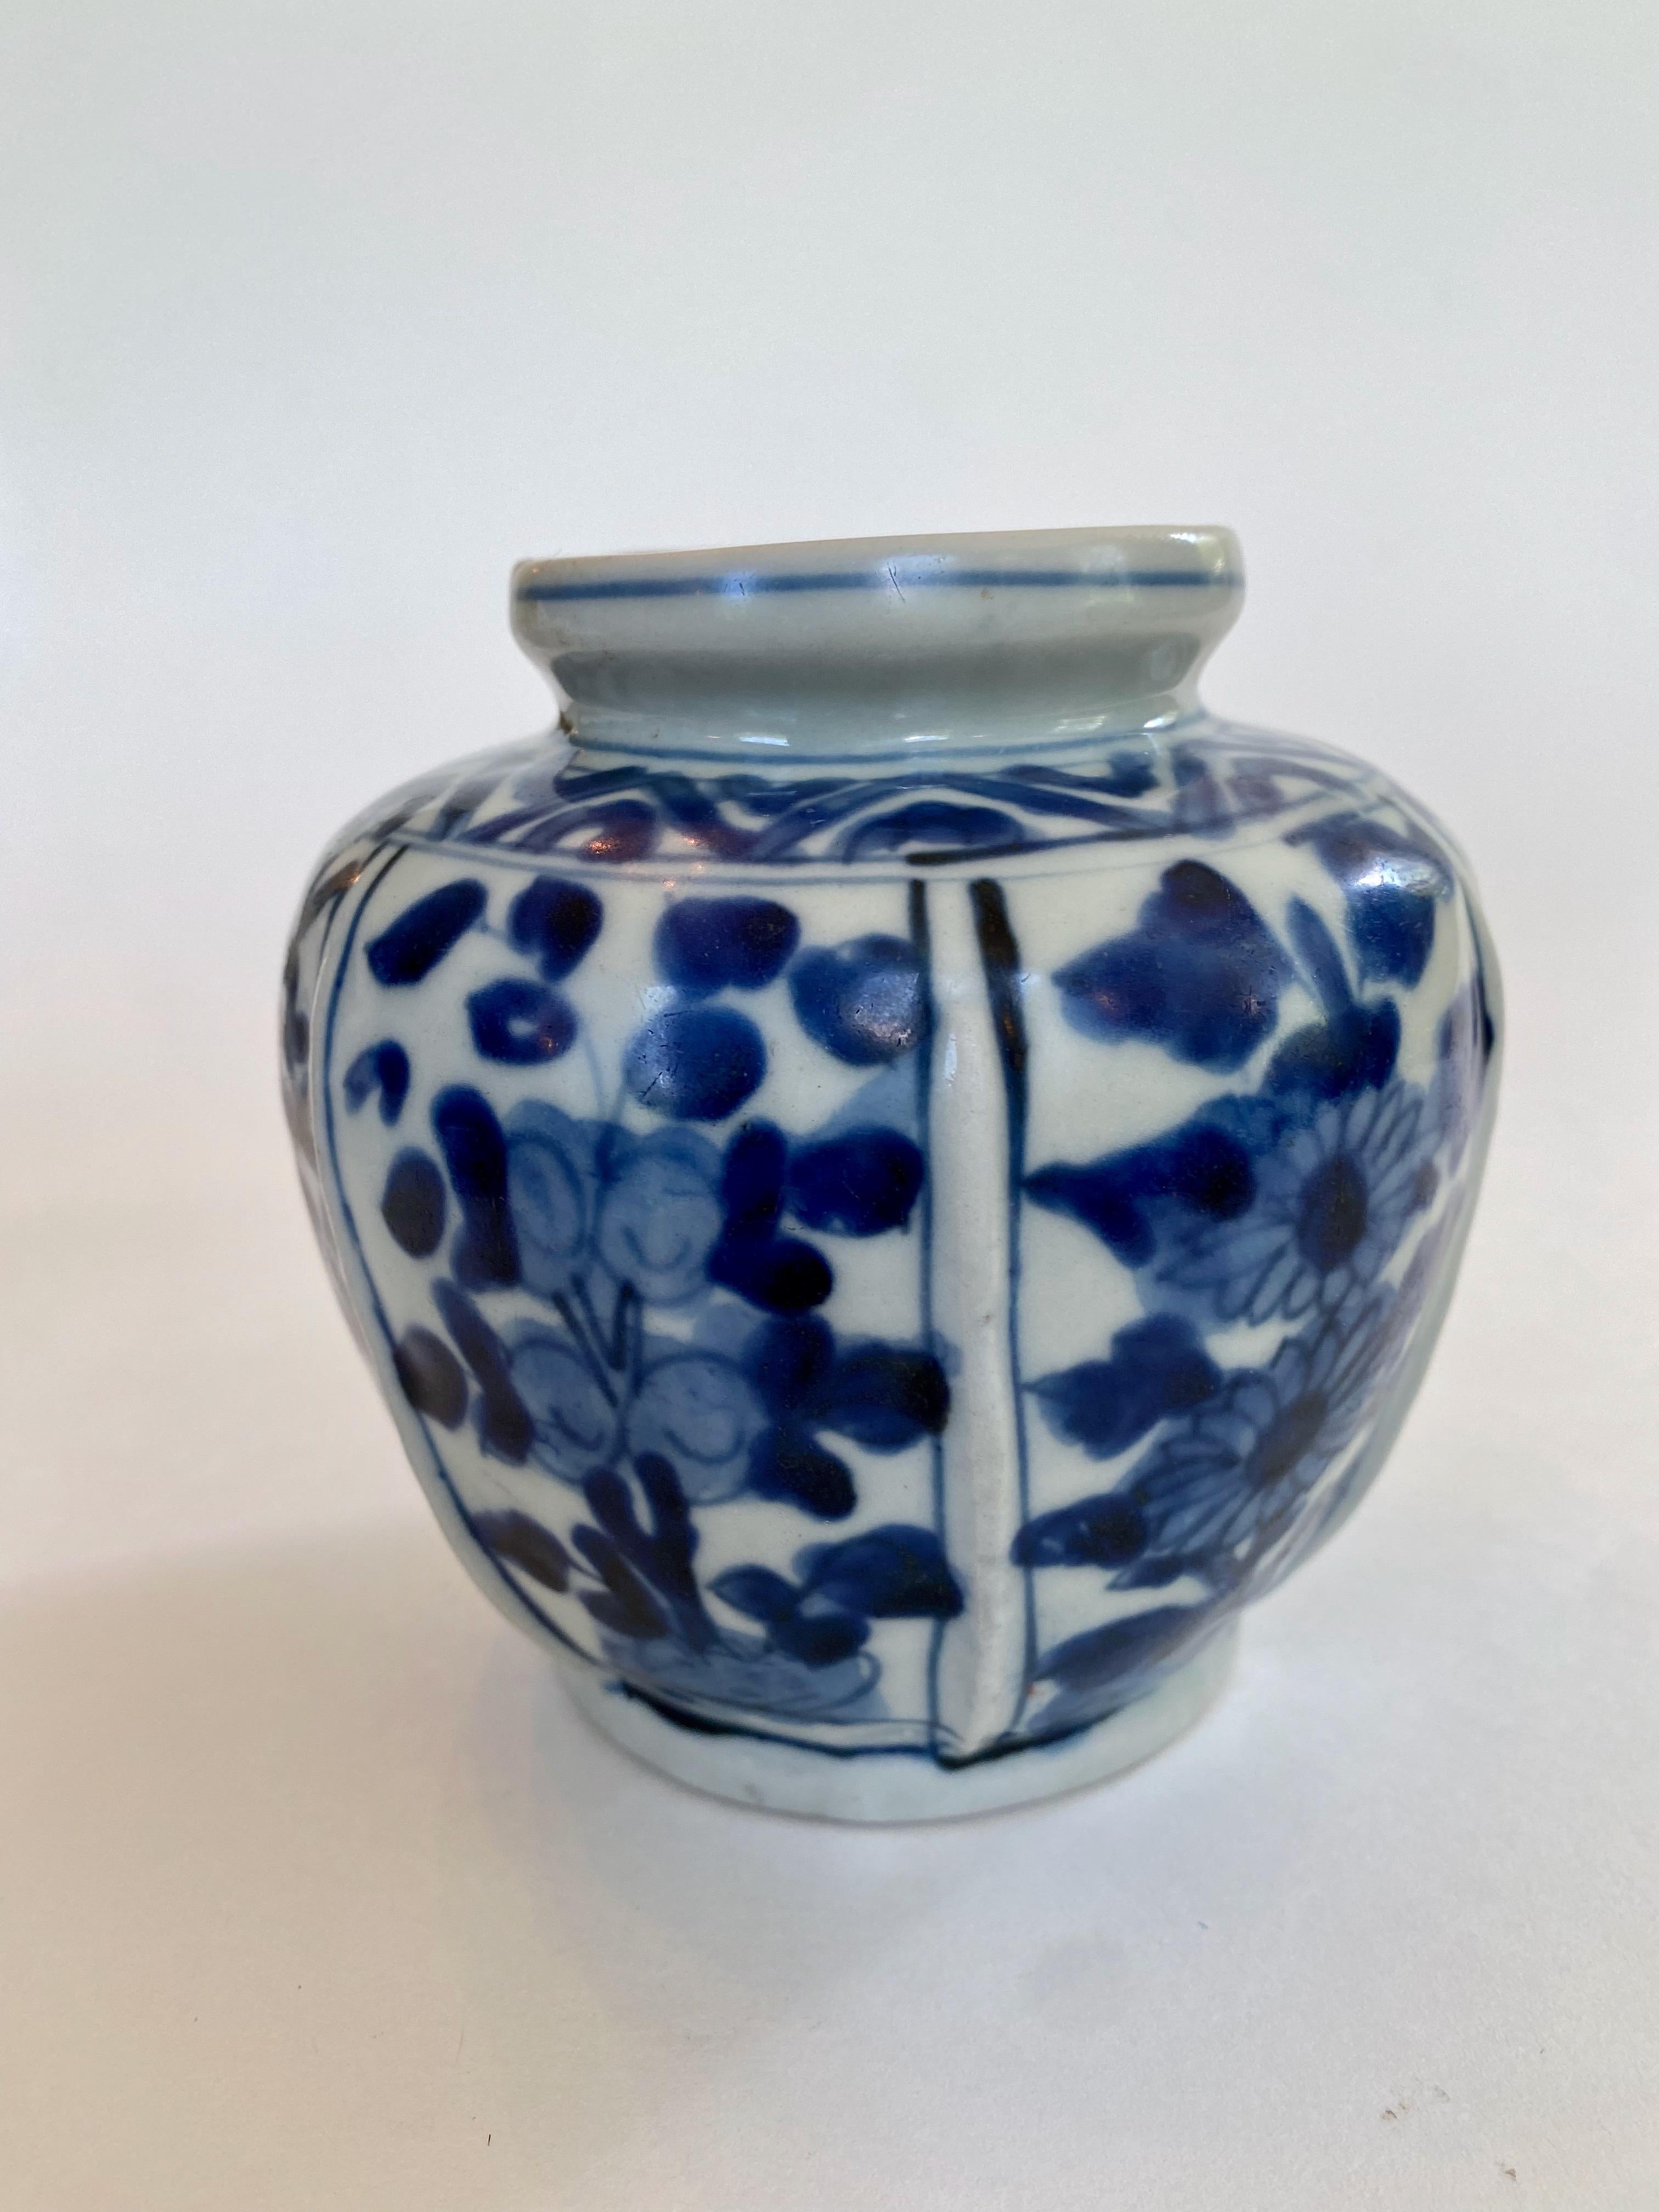 Blau-weiß gerippte Vase aus der Ming-Dynastie aus der Wan Li-Periode (1563-1620). Die erhabenen Rippen auf dem Korpus trennen Paneele mit kühn gemalten, stilisierten Blumen, darunter Sonnenblumen, in leuchtendem Kobaltblau. Die Vase hat außerdem ein